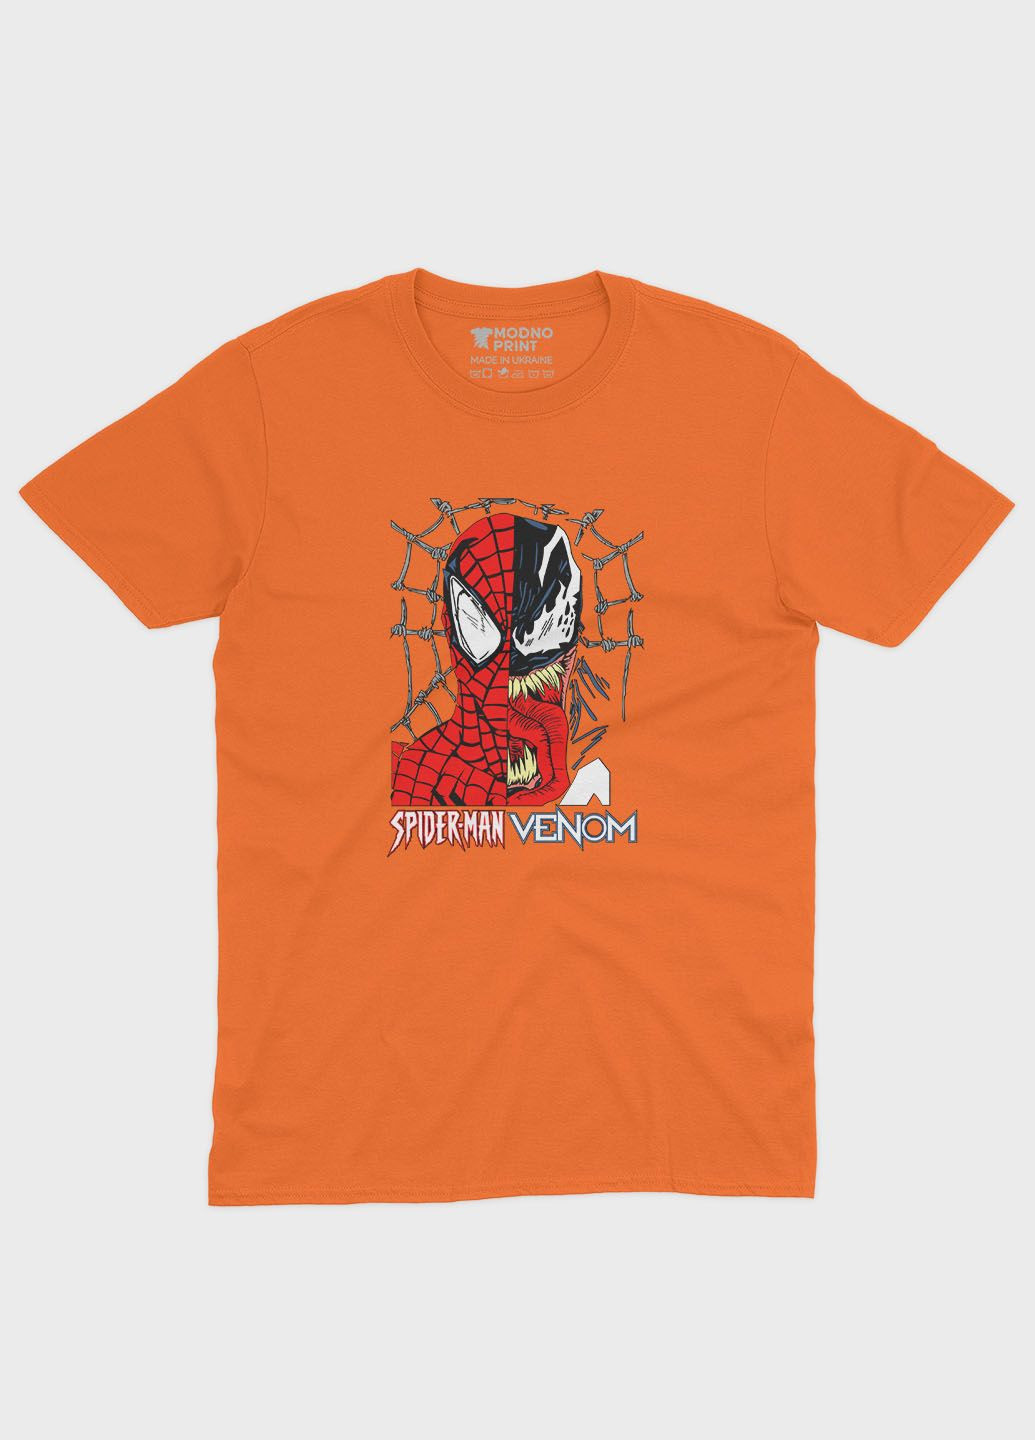 Оранжевая демисезонная футболка для мальчика с принтом супергероя - человек-паук (ts001-1-ora-006-014-050-b) Modno